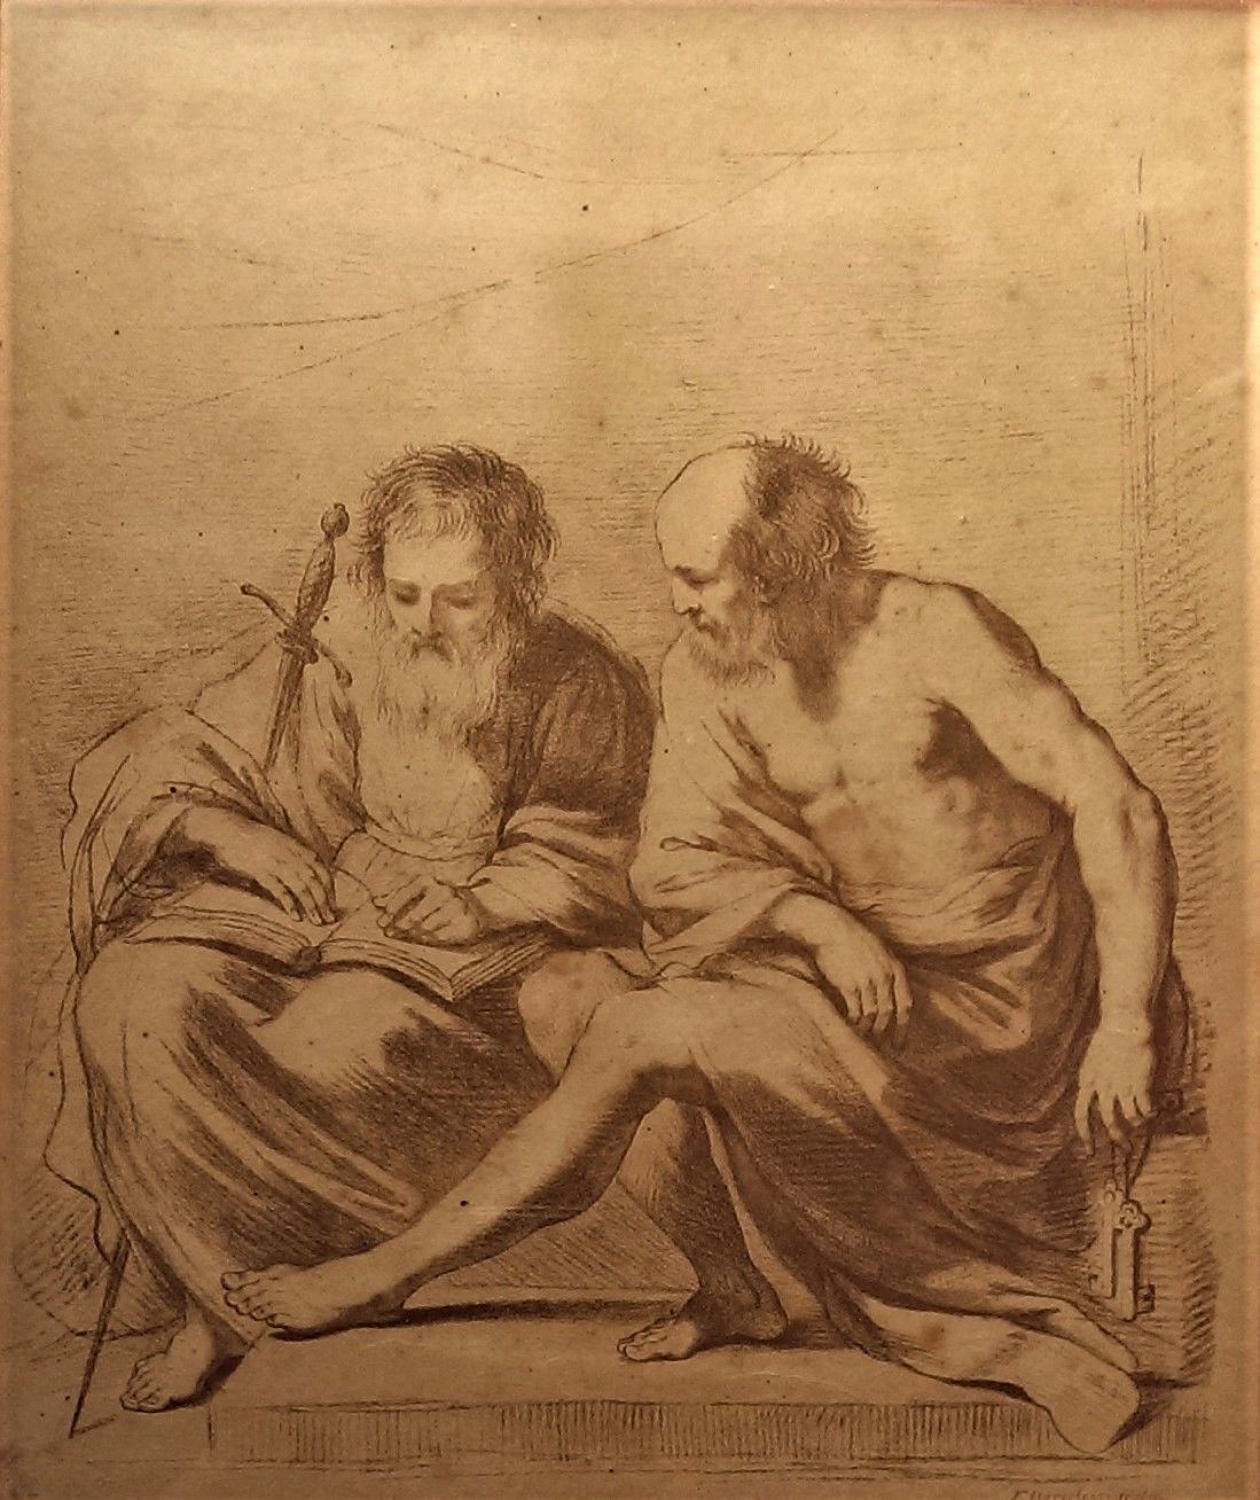 Francesco BARTOLOZZI, RA (1727–1815) after Guercino (1591-1666)